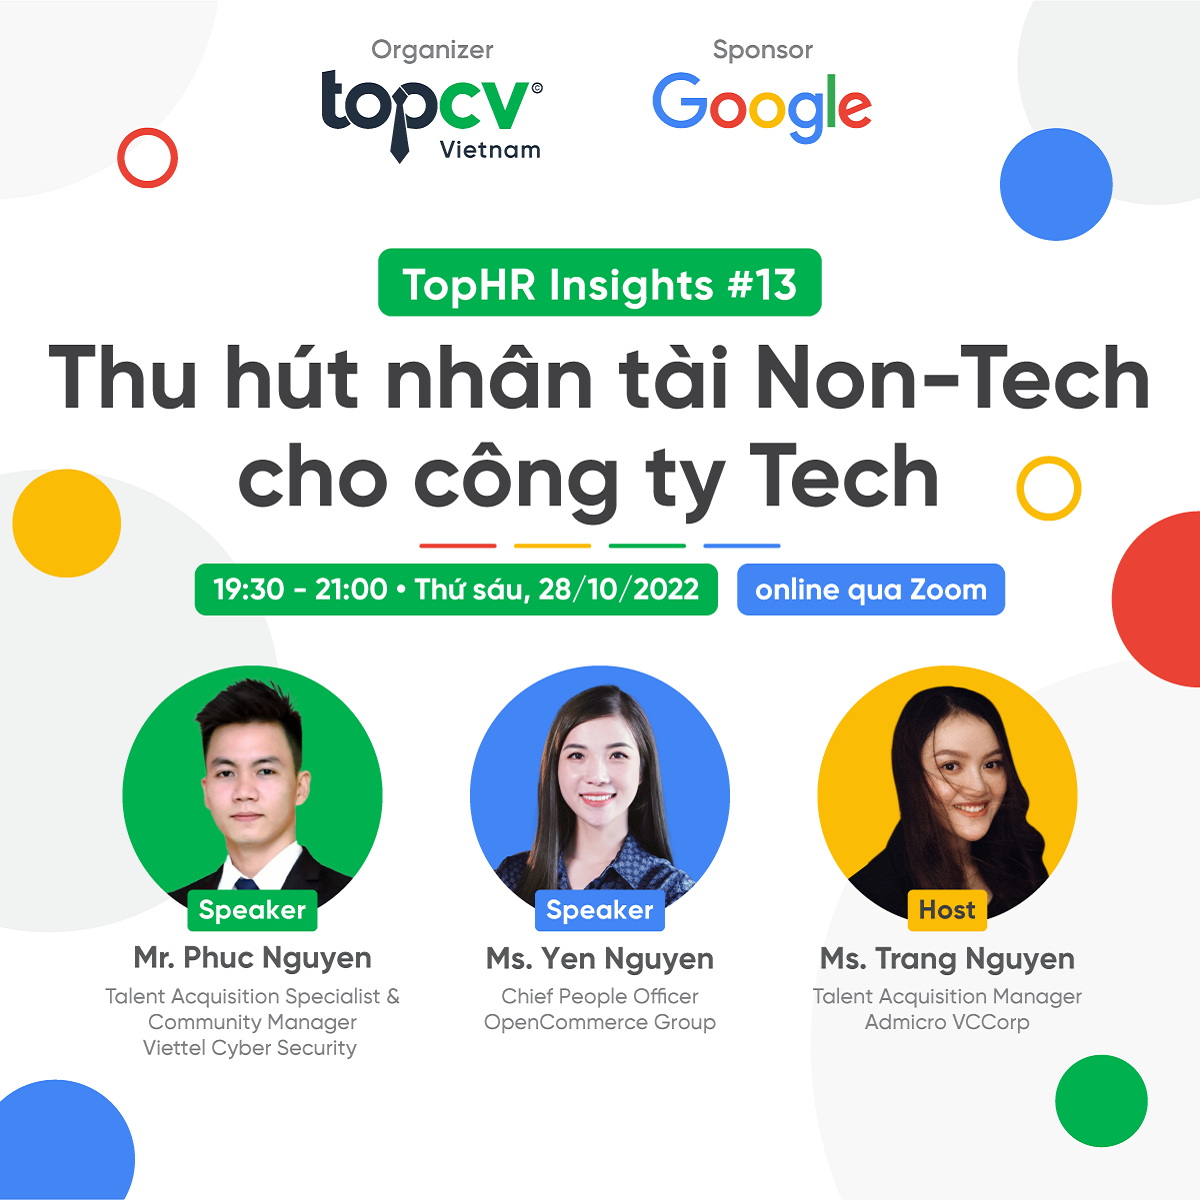 TopHR Insights #13: Thu hút nhân tài Non-Tech cho công ty Tech